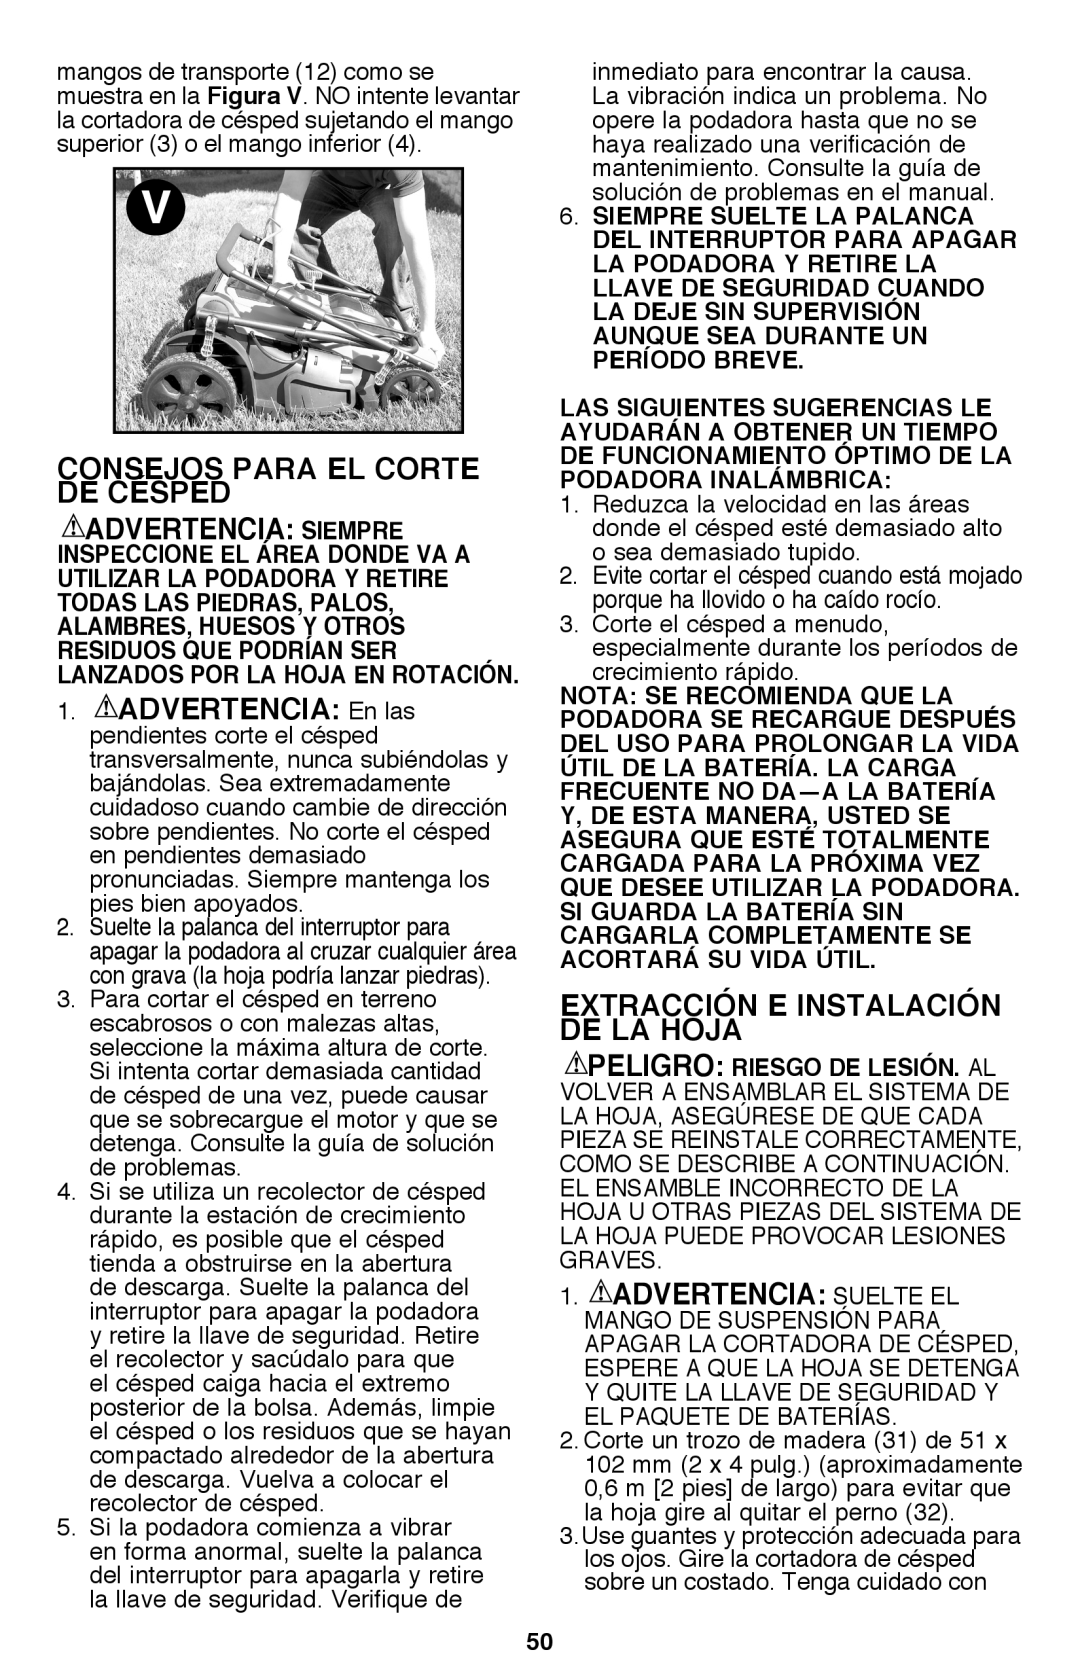 Black & Decker CM2040 instruction manual Consejos Para El Corte De Césped, Extracción E Instalación De La Hoja 